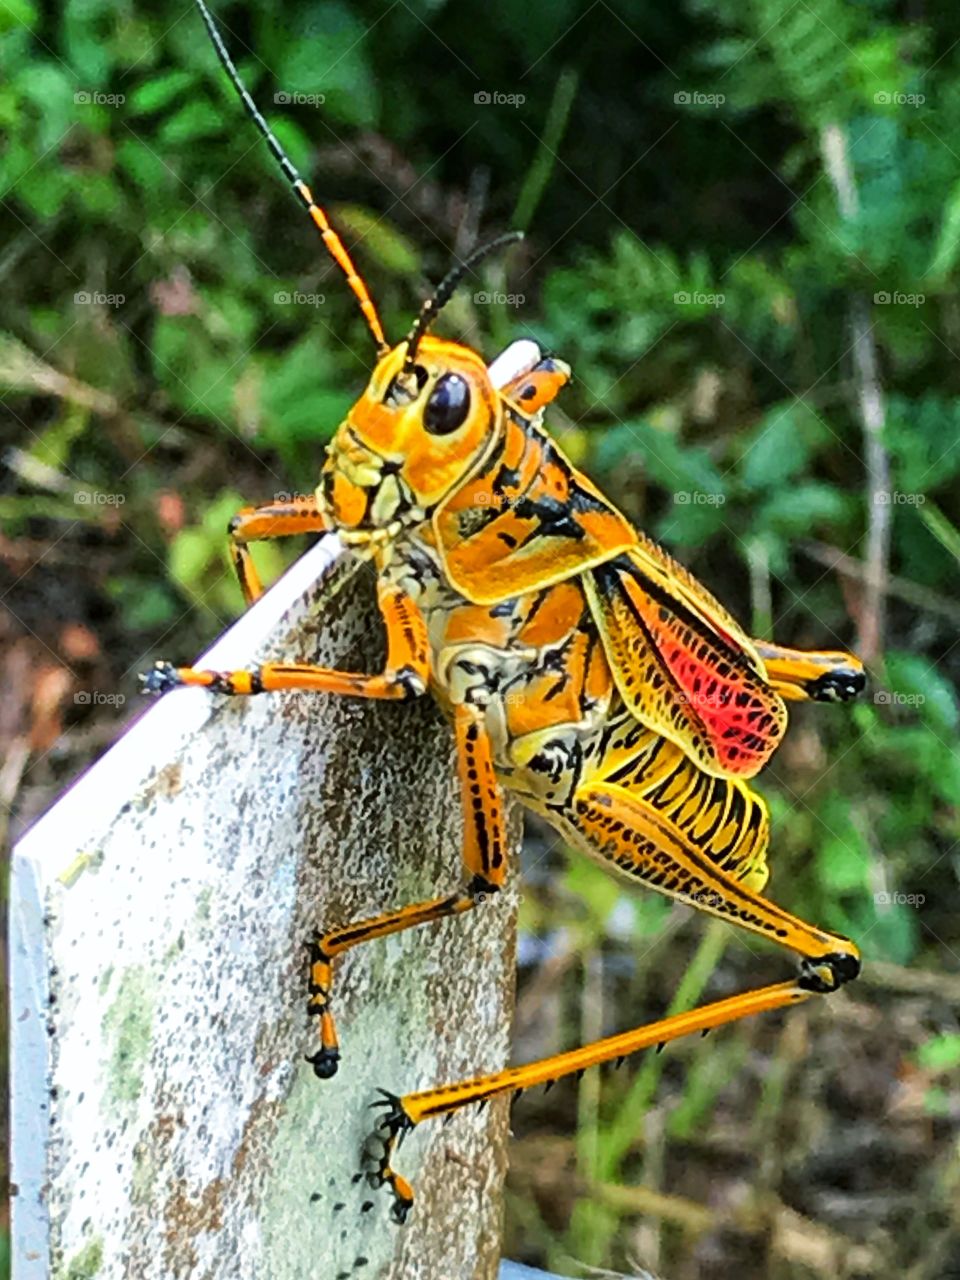 Agile, brightly colored grasshopper 